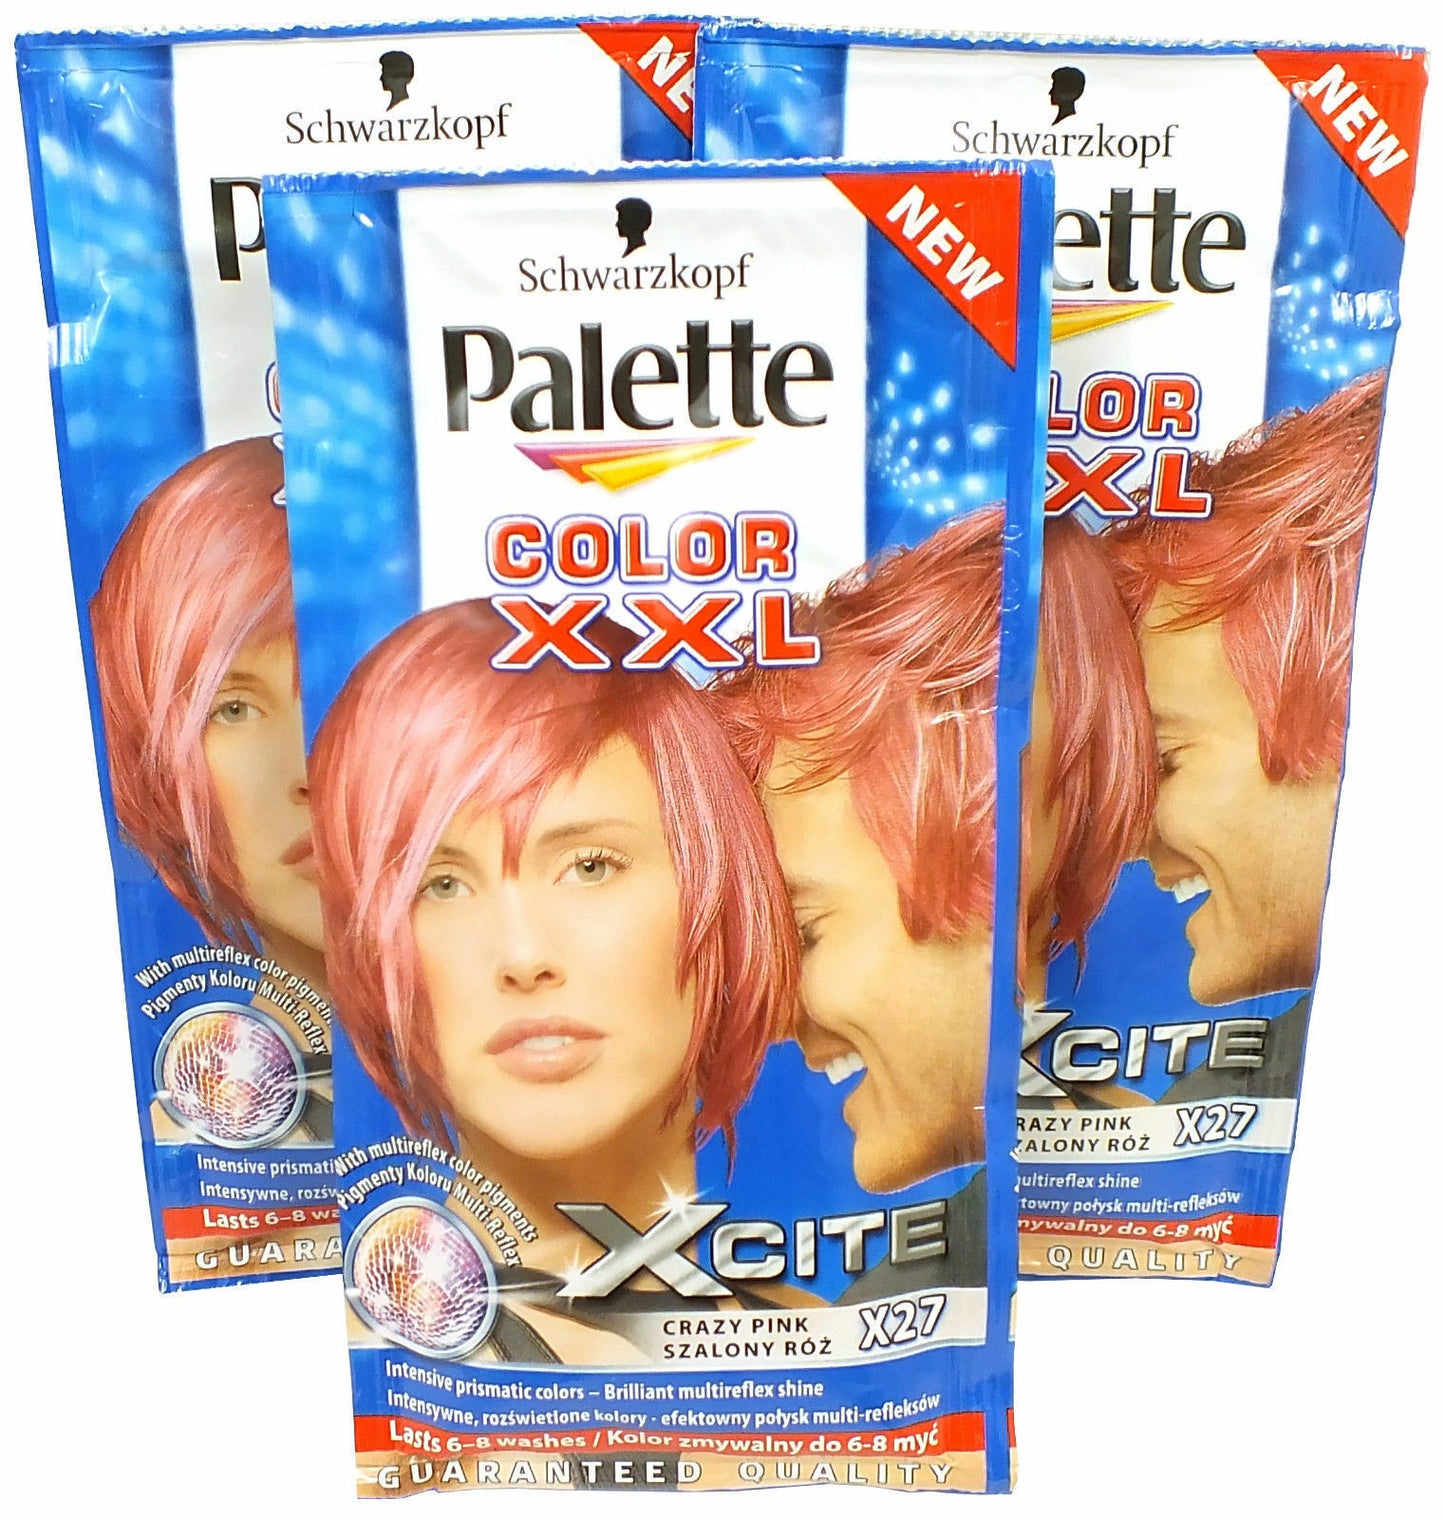 3x Schwarzkopf Crazy Pink X27 Palette Color XXL Xcite 25ml - Hair Colour